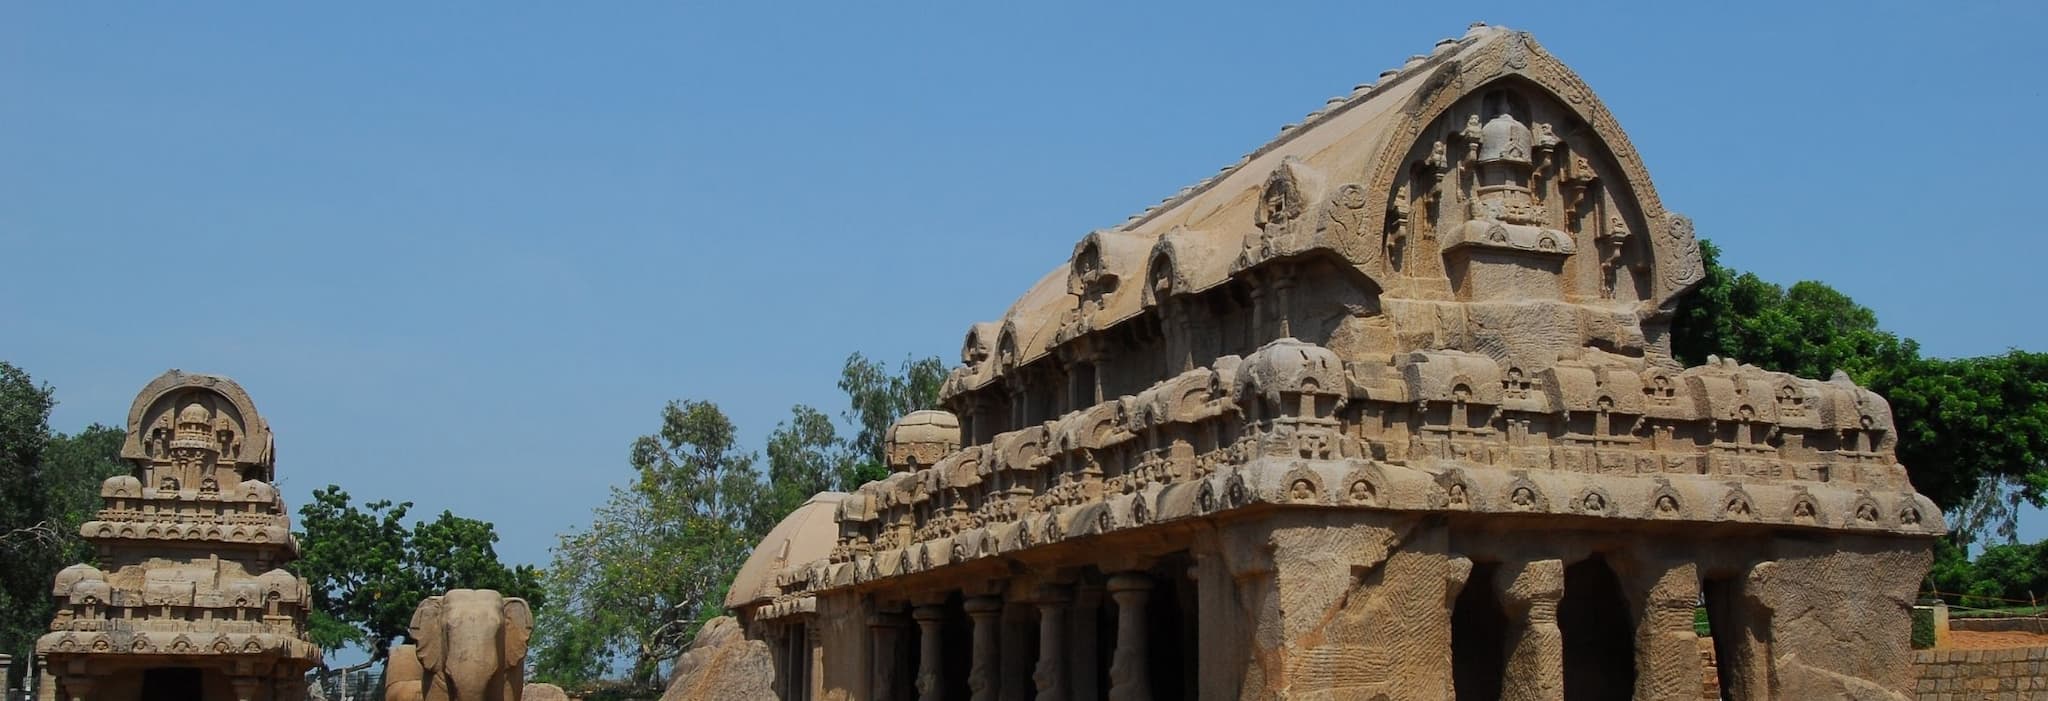 Bhima Ratha at Mahabalipuram